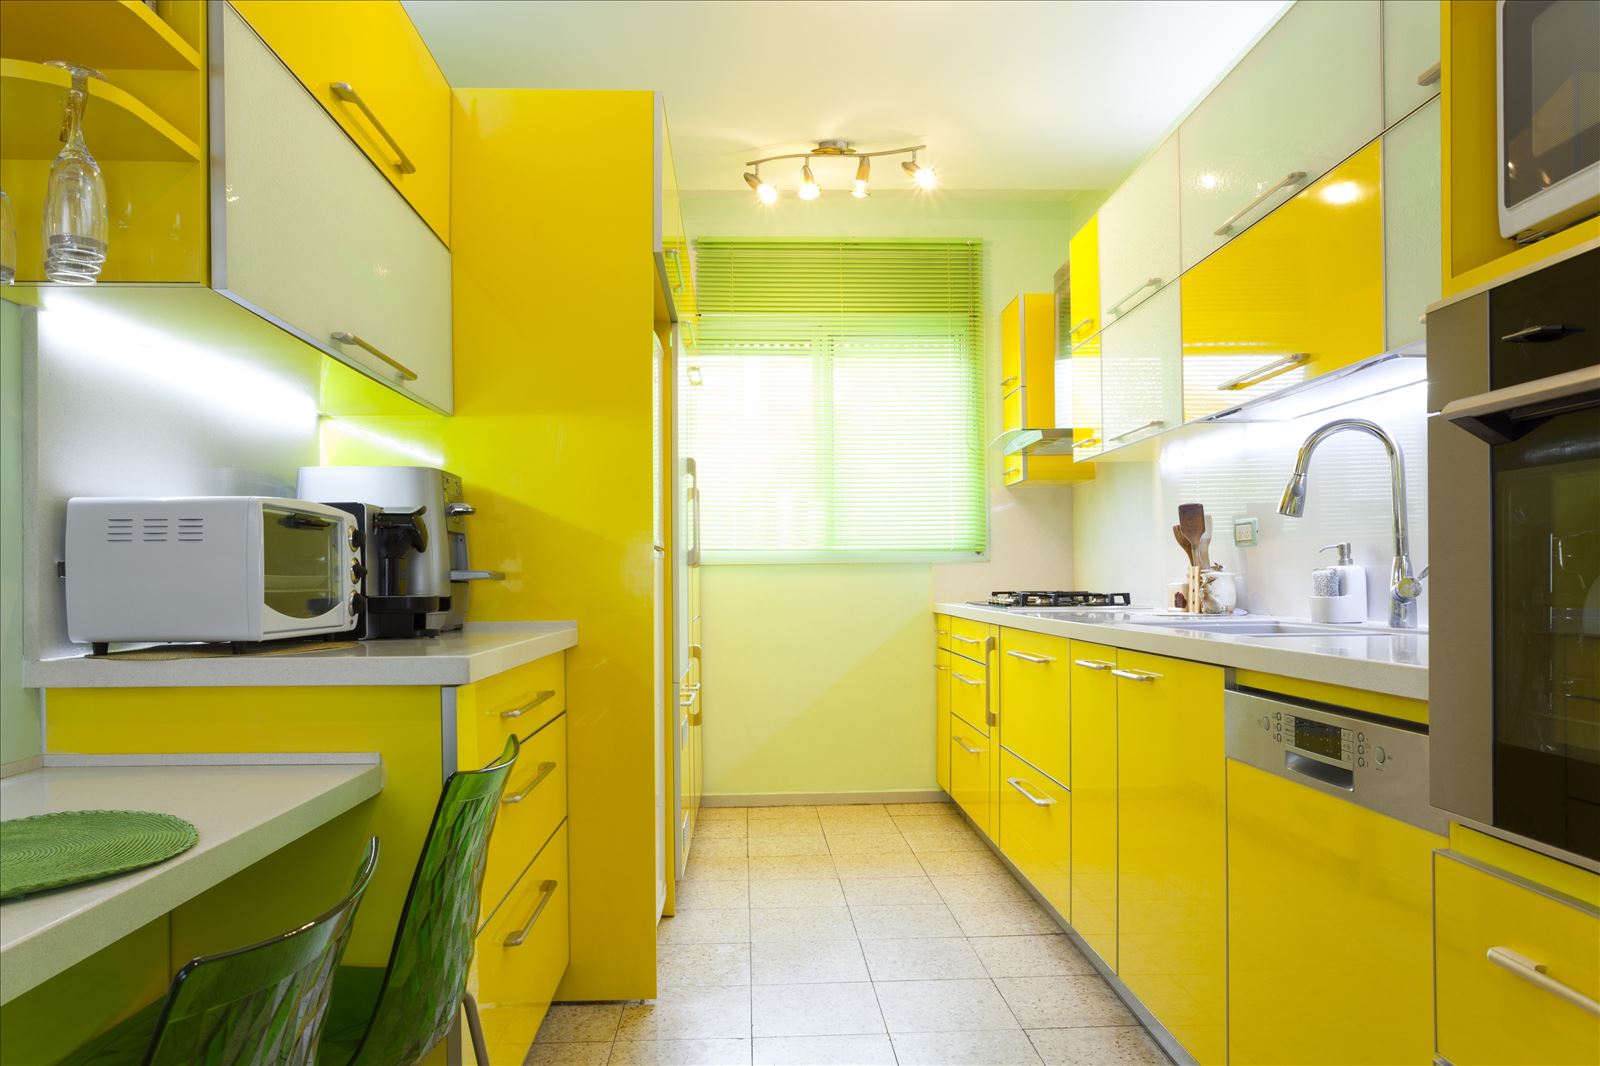 การตกแต่งภายในห้องครัวสีเขียว (19 รูป): ตัวเลือกการออกแบบที่ทันสมัย